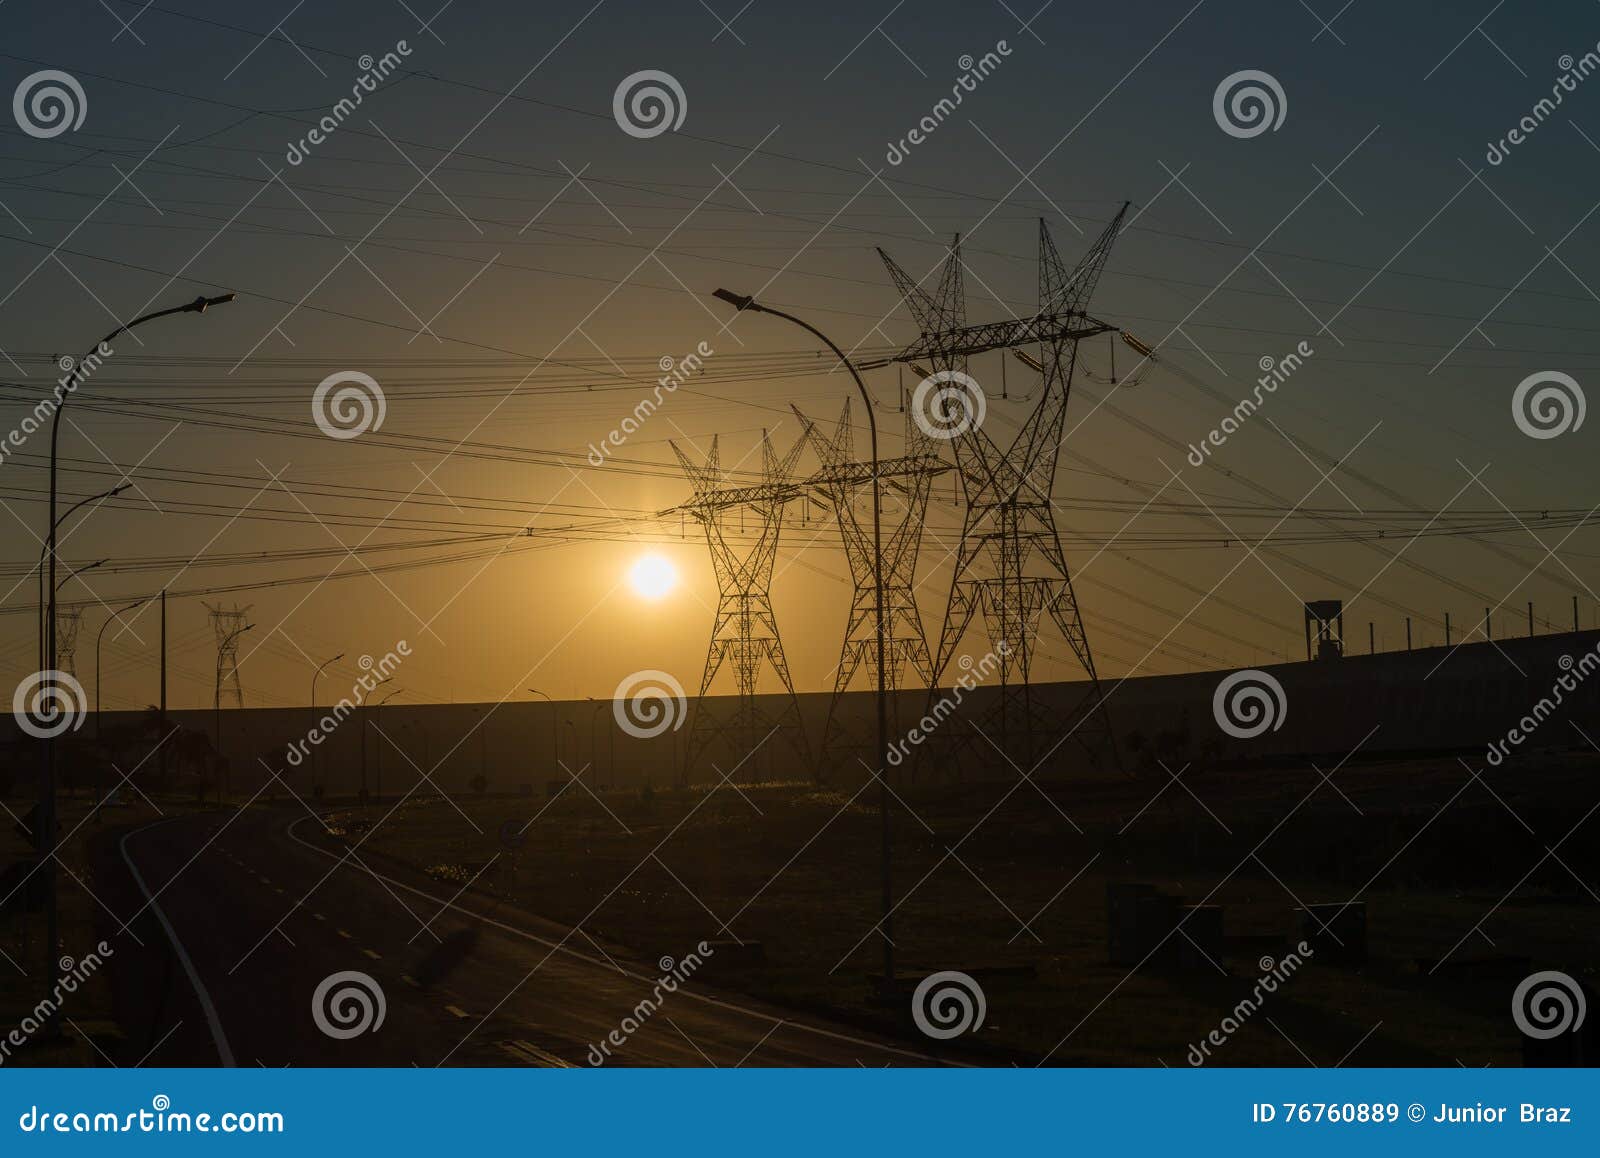 power lines at the sunset near itaipu dam